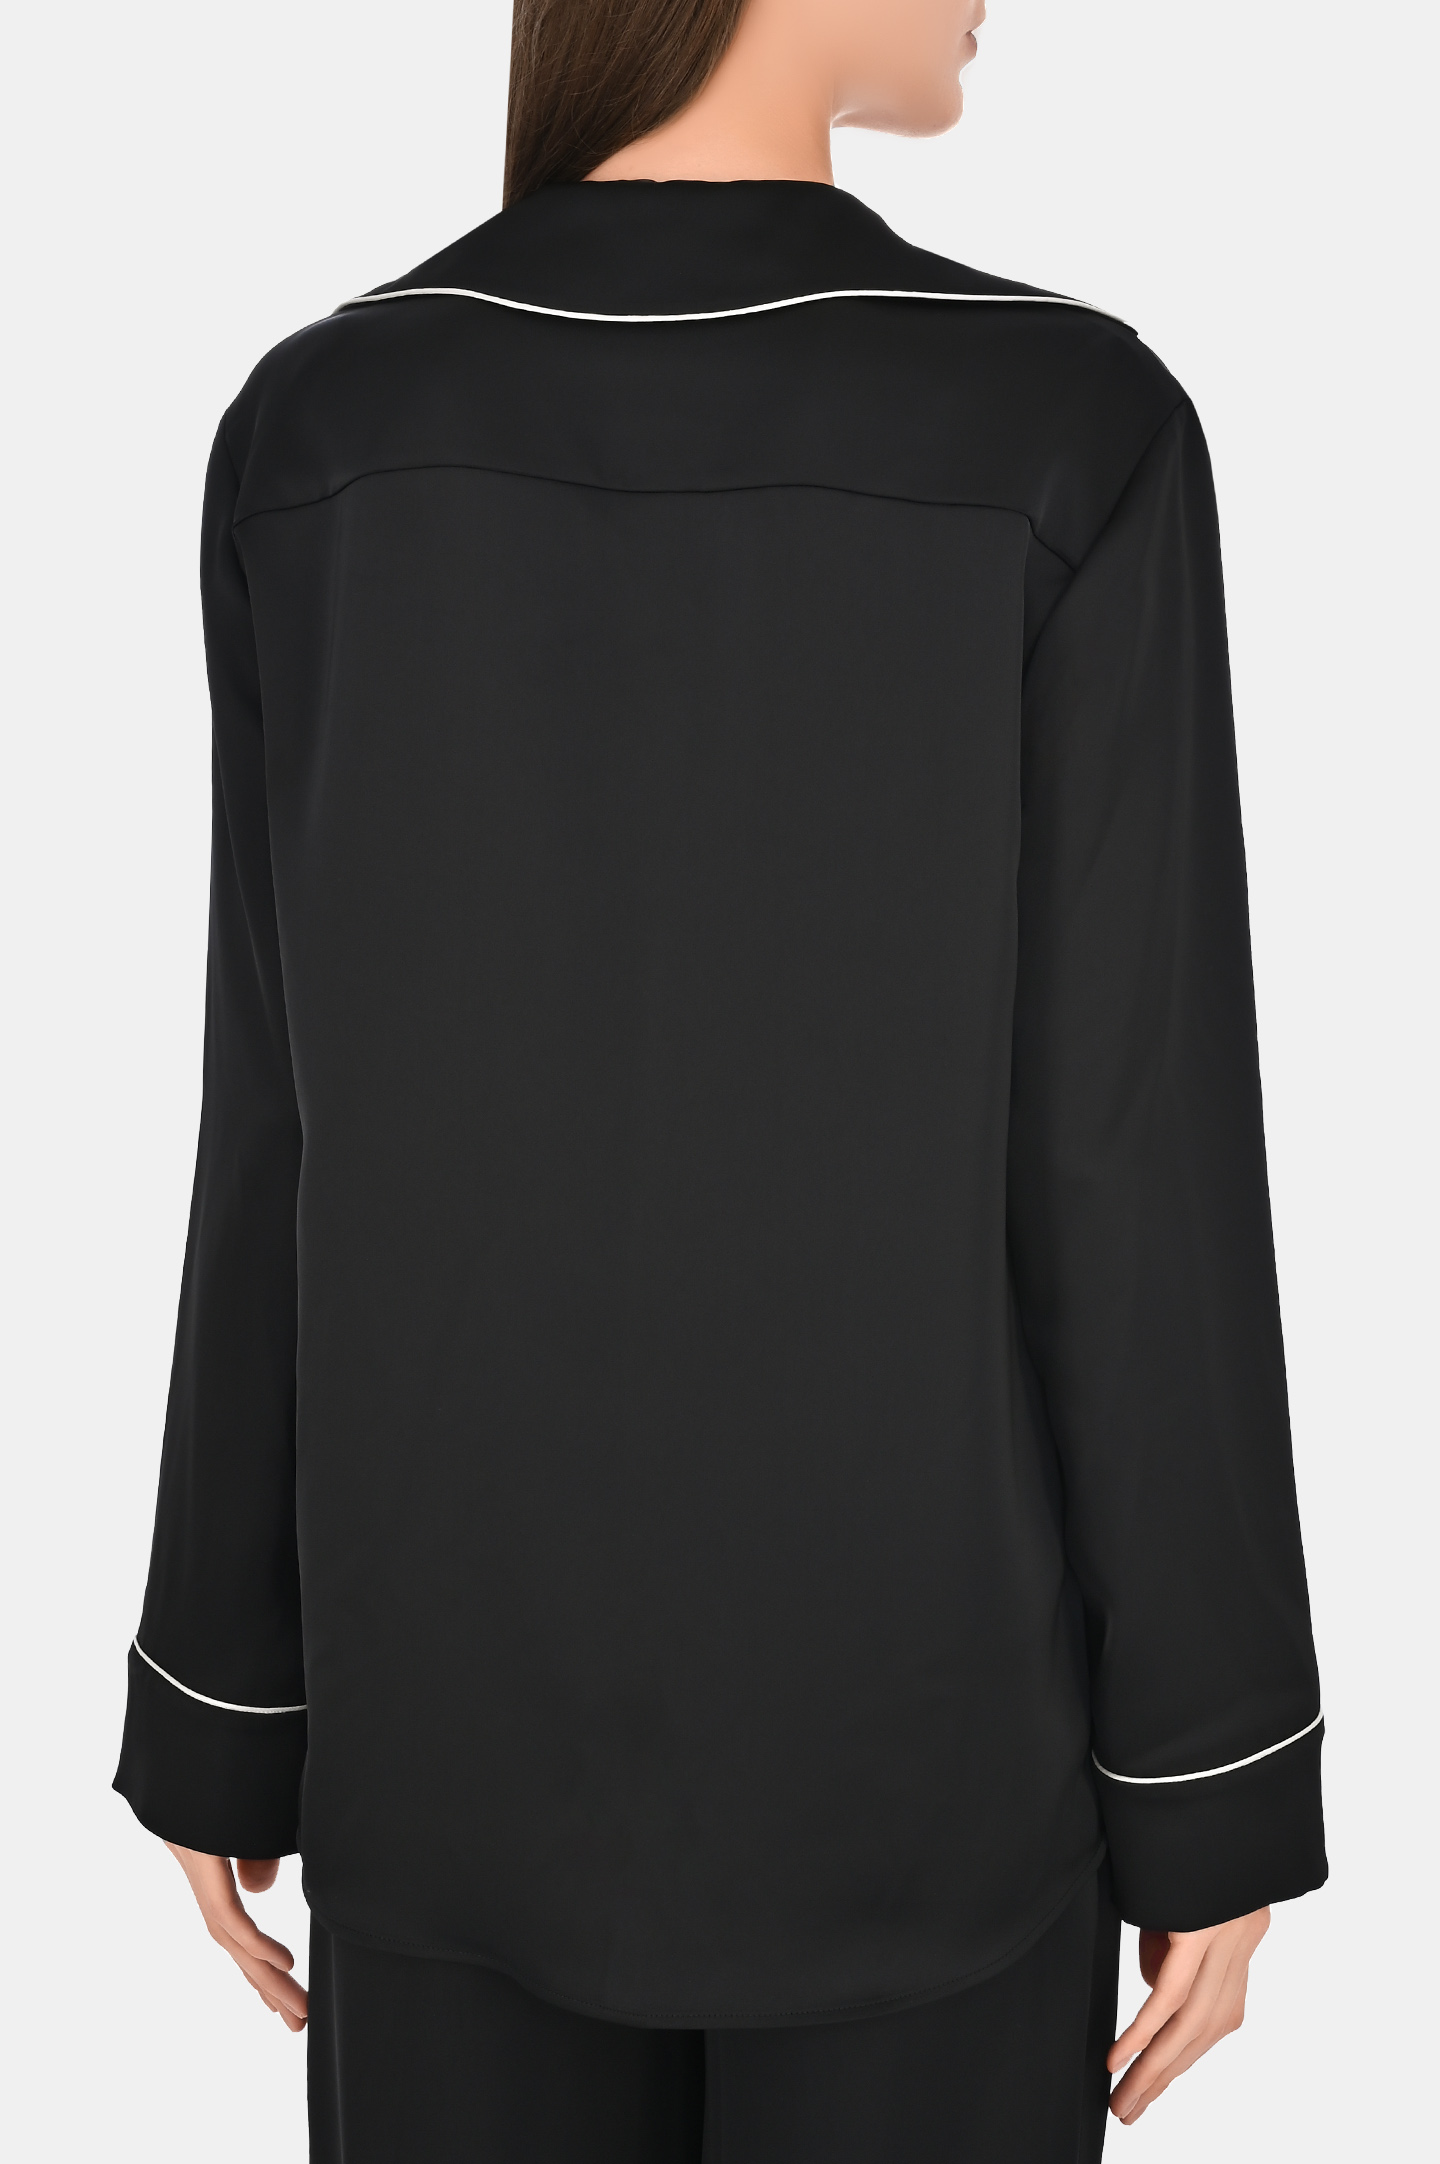 Блуза PHILOSOPHY DI LORENZO SERAFINI A0210 7122, цвет: Черный, Женский